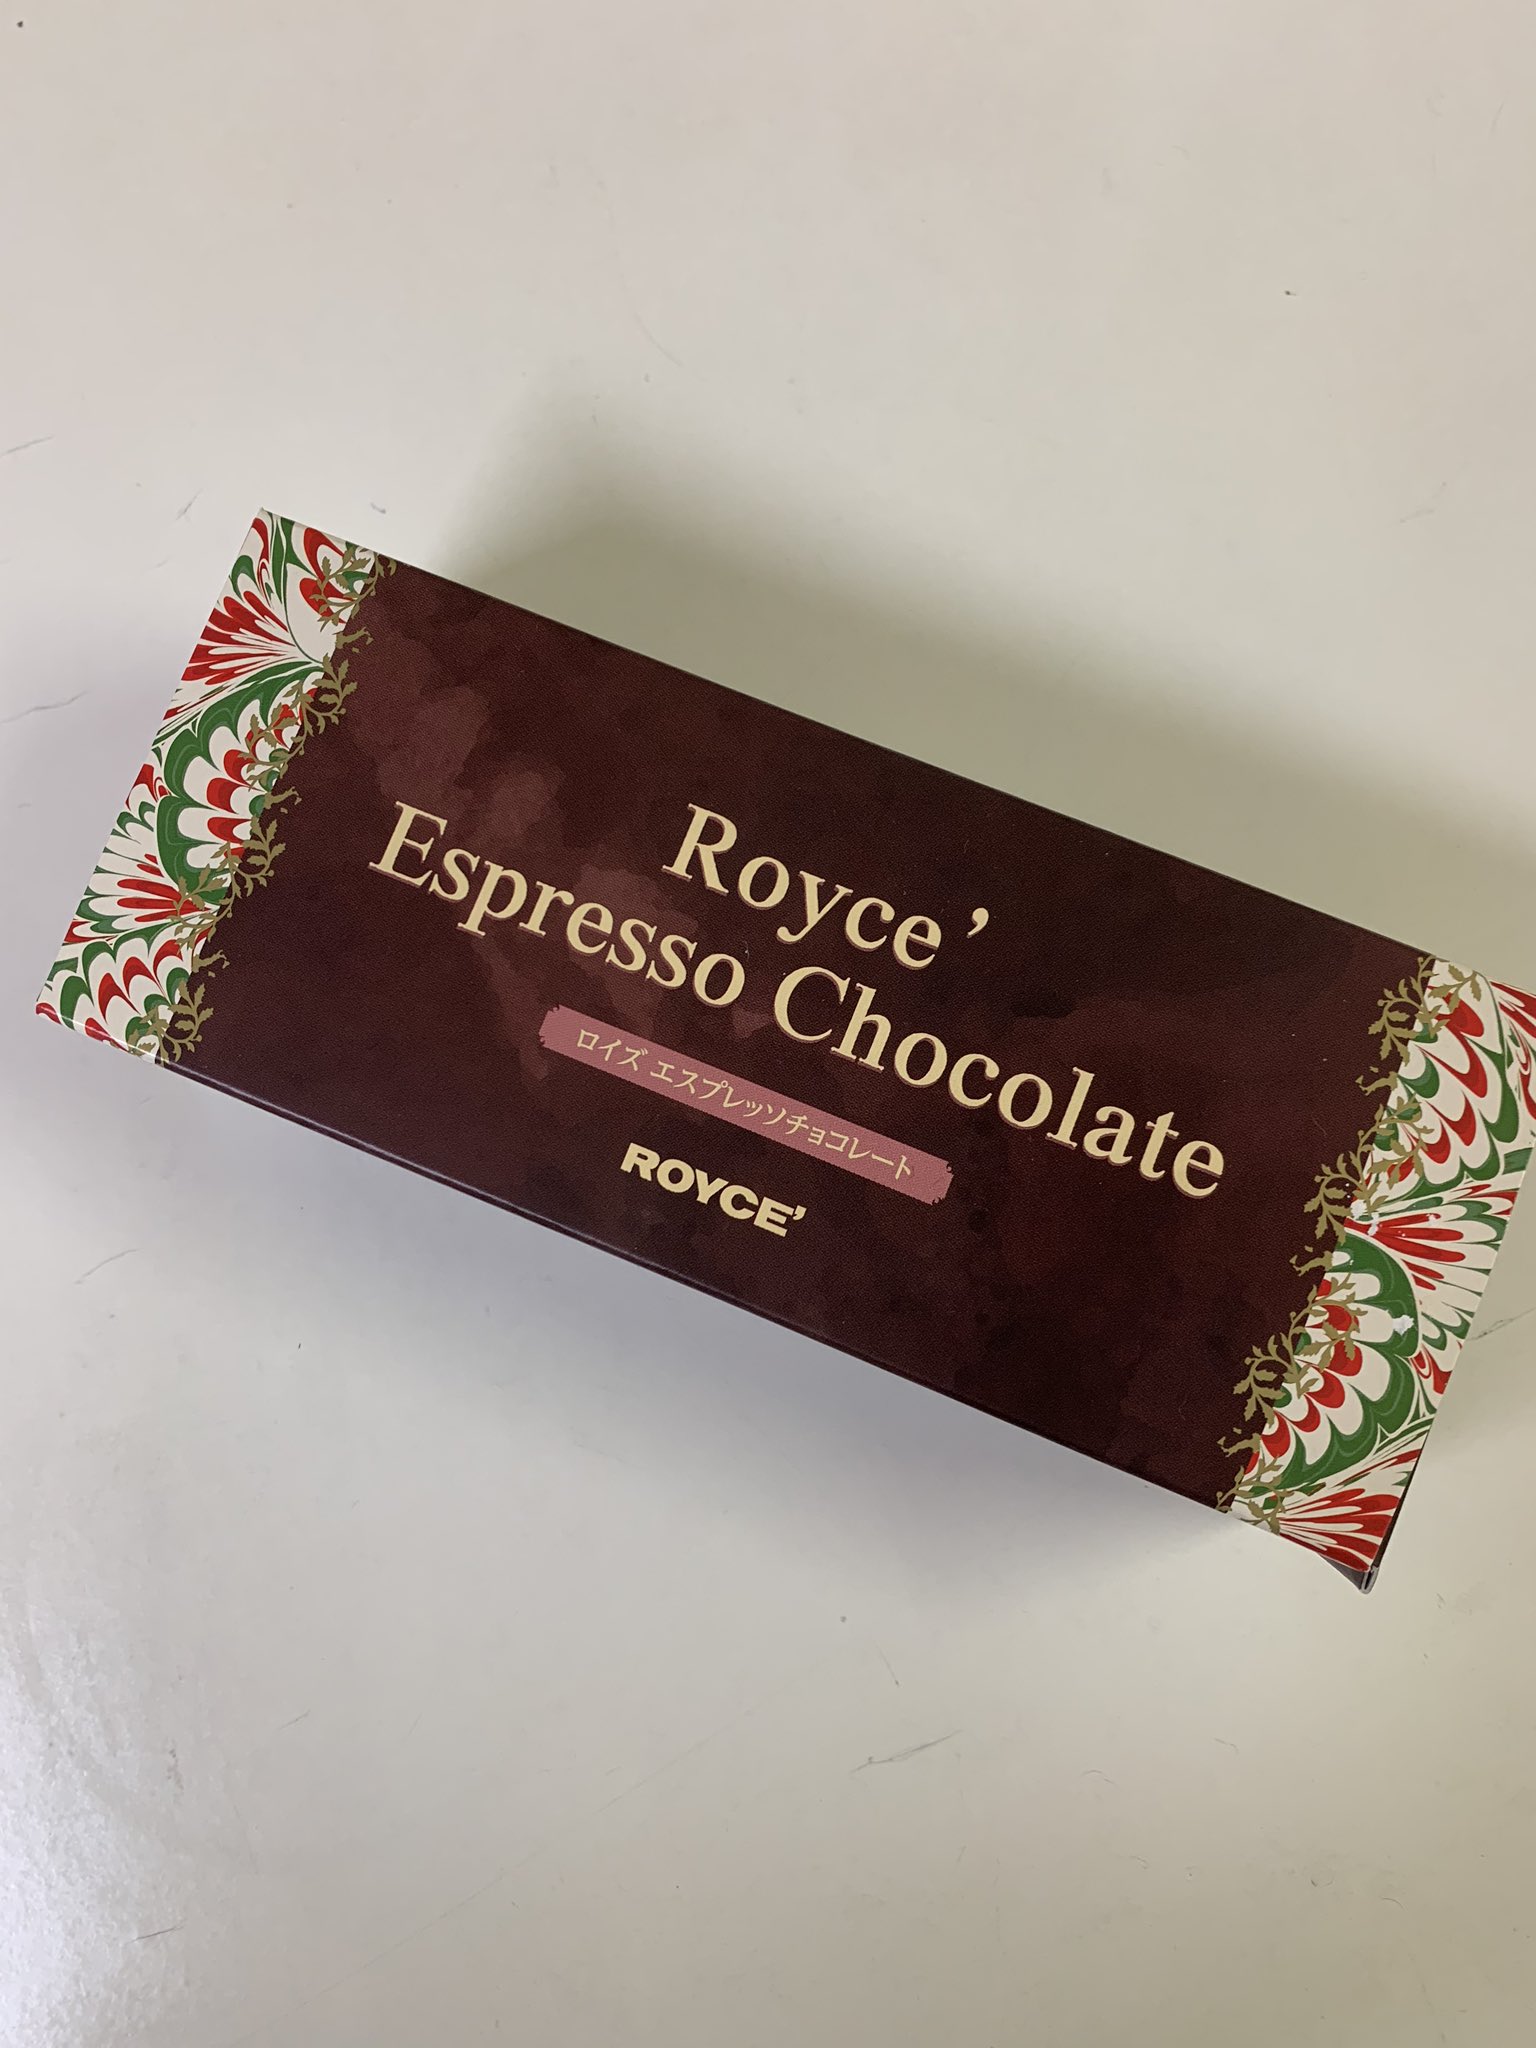 チョコレートくん On Twitter イタリアといえばエスプレッソ ロイズのイタリアンフェアの エスプレッソチョコレート は 濃く香る エスプレッソのチョコレートに まろやかな甘味のホワイトチョコレートが溶け合います